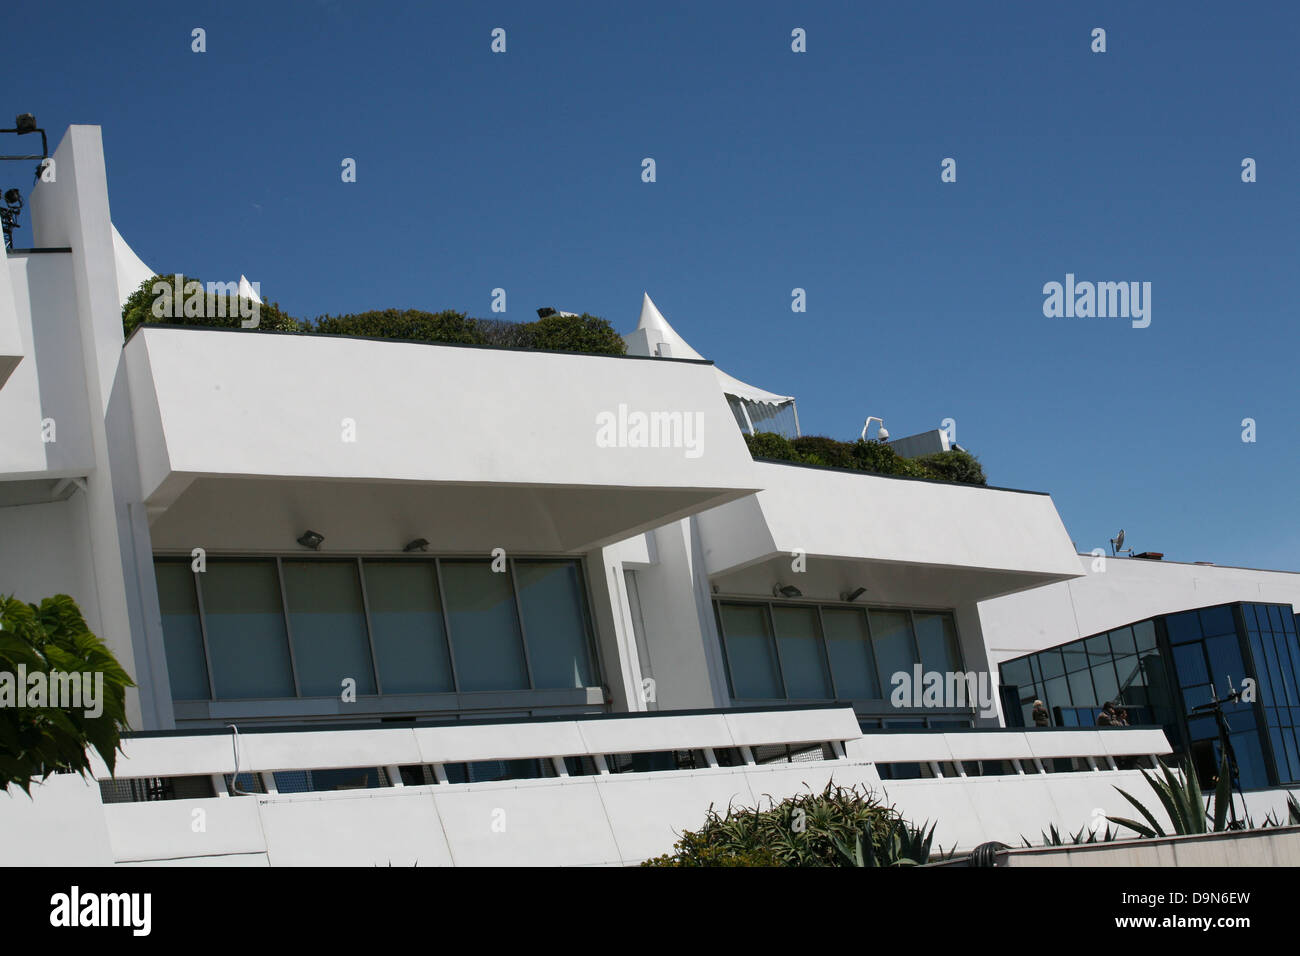 La terraza de la azotea del palacio de festivales durante el Festival de Cine de Cannes 2013 Foto de stock